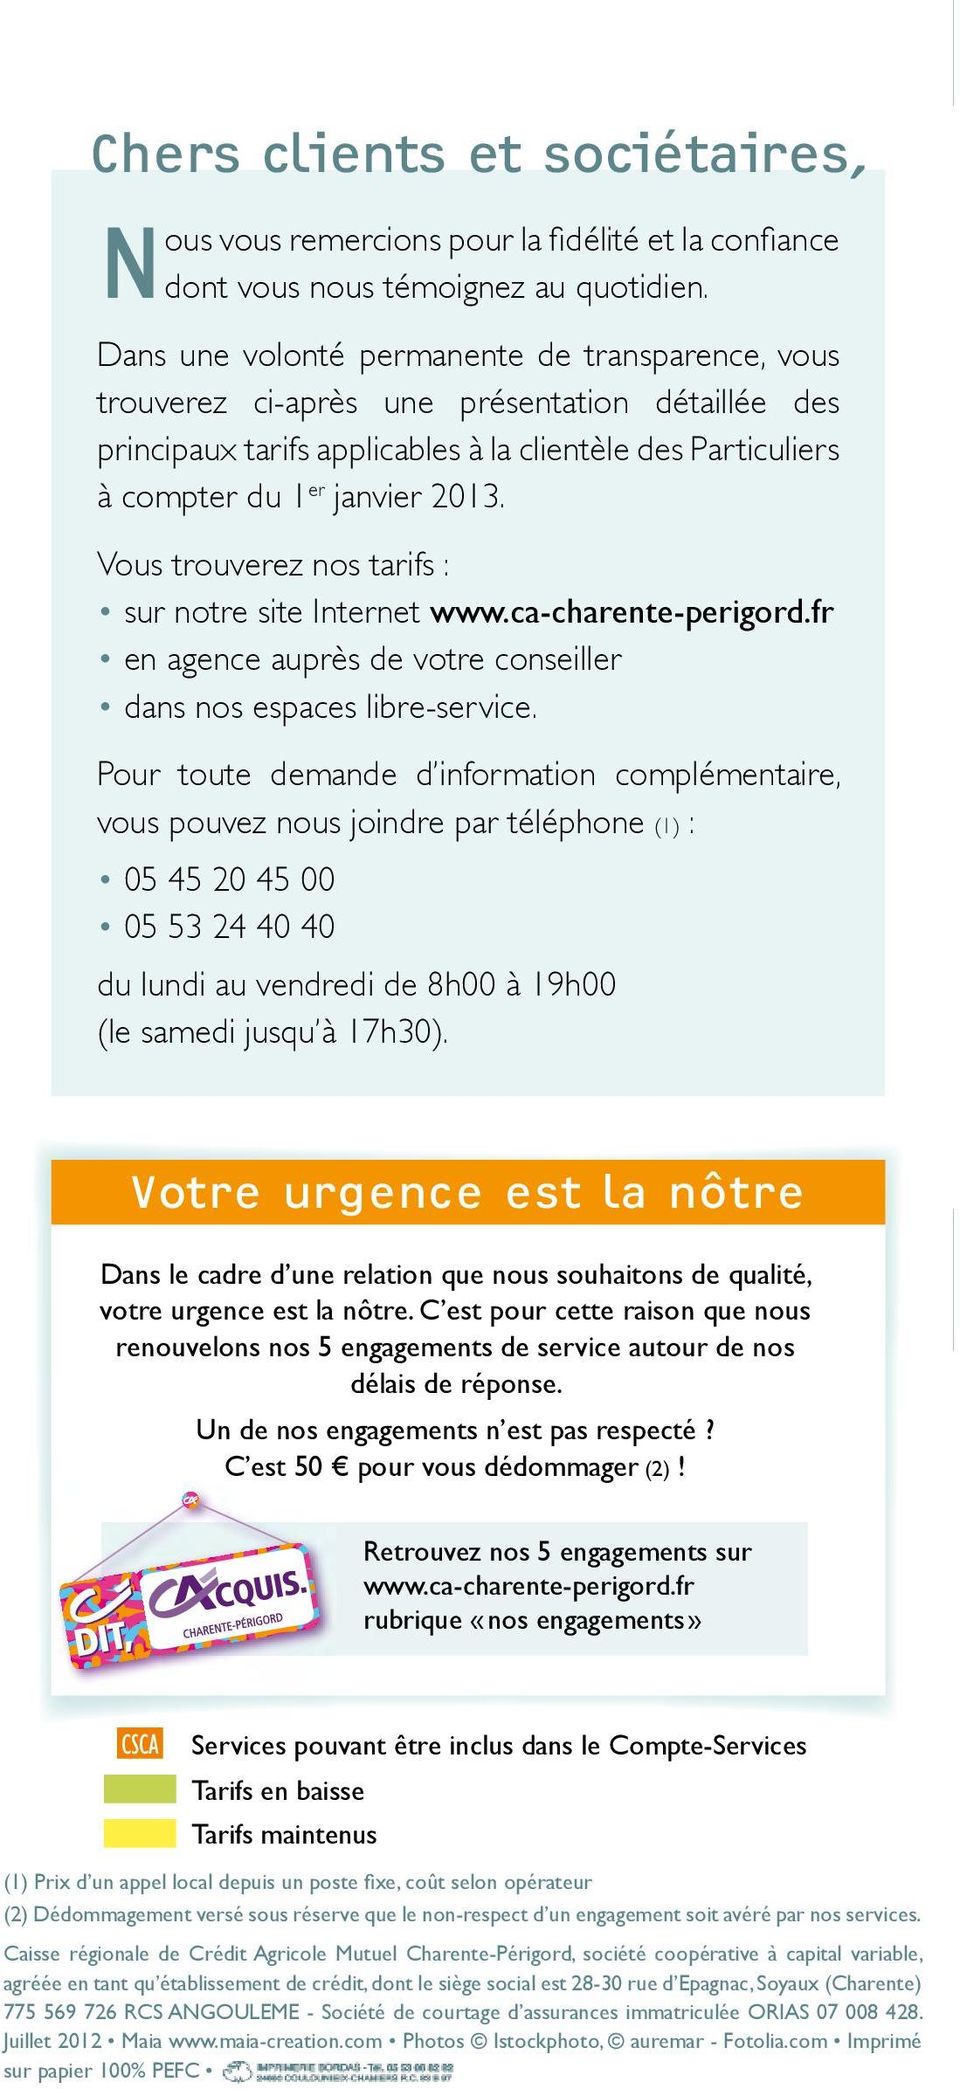 Vous trouverez nos tarifs : sur notre site Internet www.ca-charente-perigord.fr en agence auprès de votre conseiller dans nos espaces libre-service.